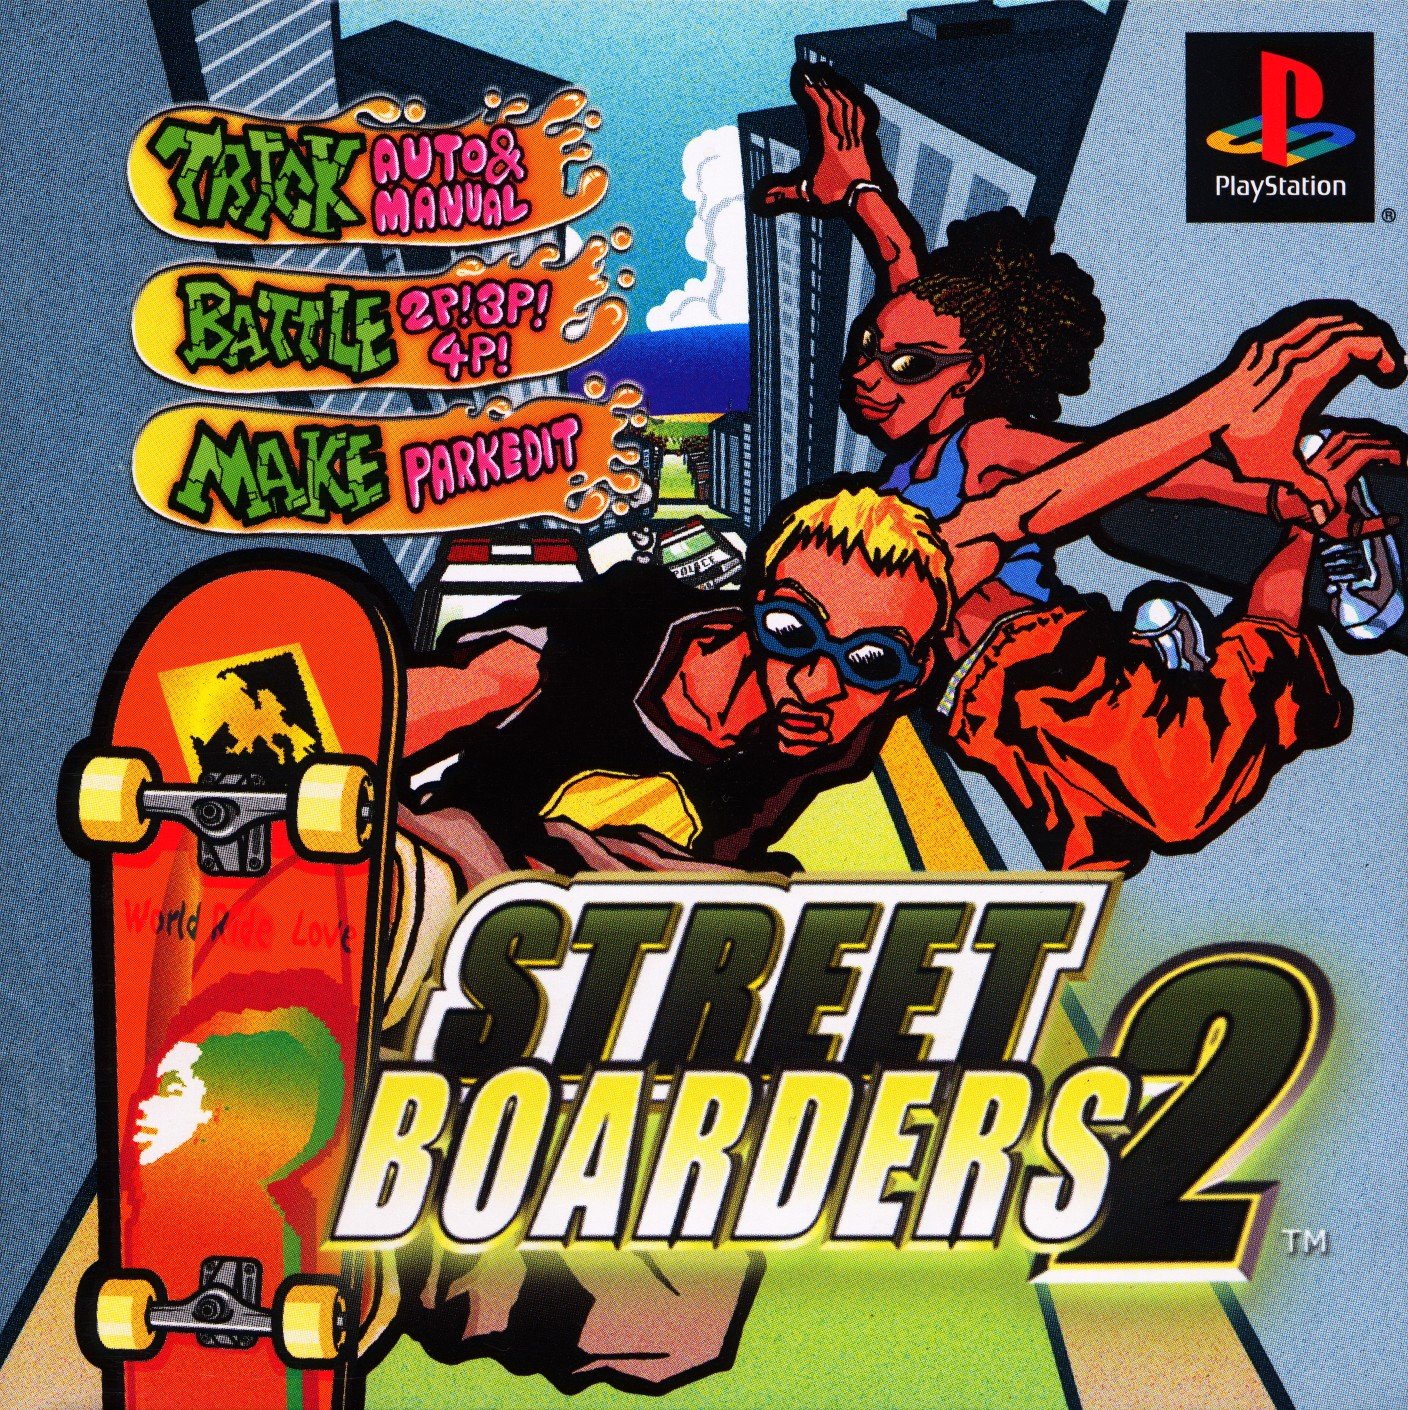 Street Boarders 2